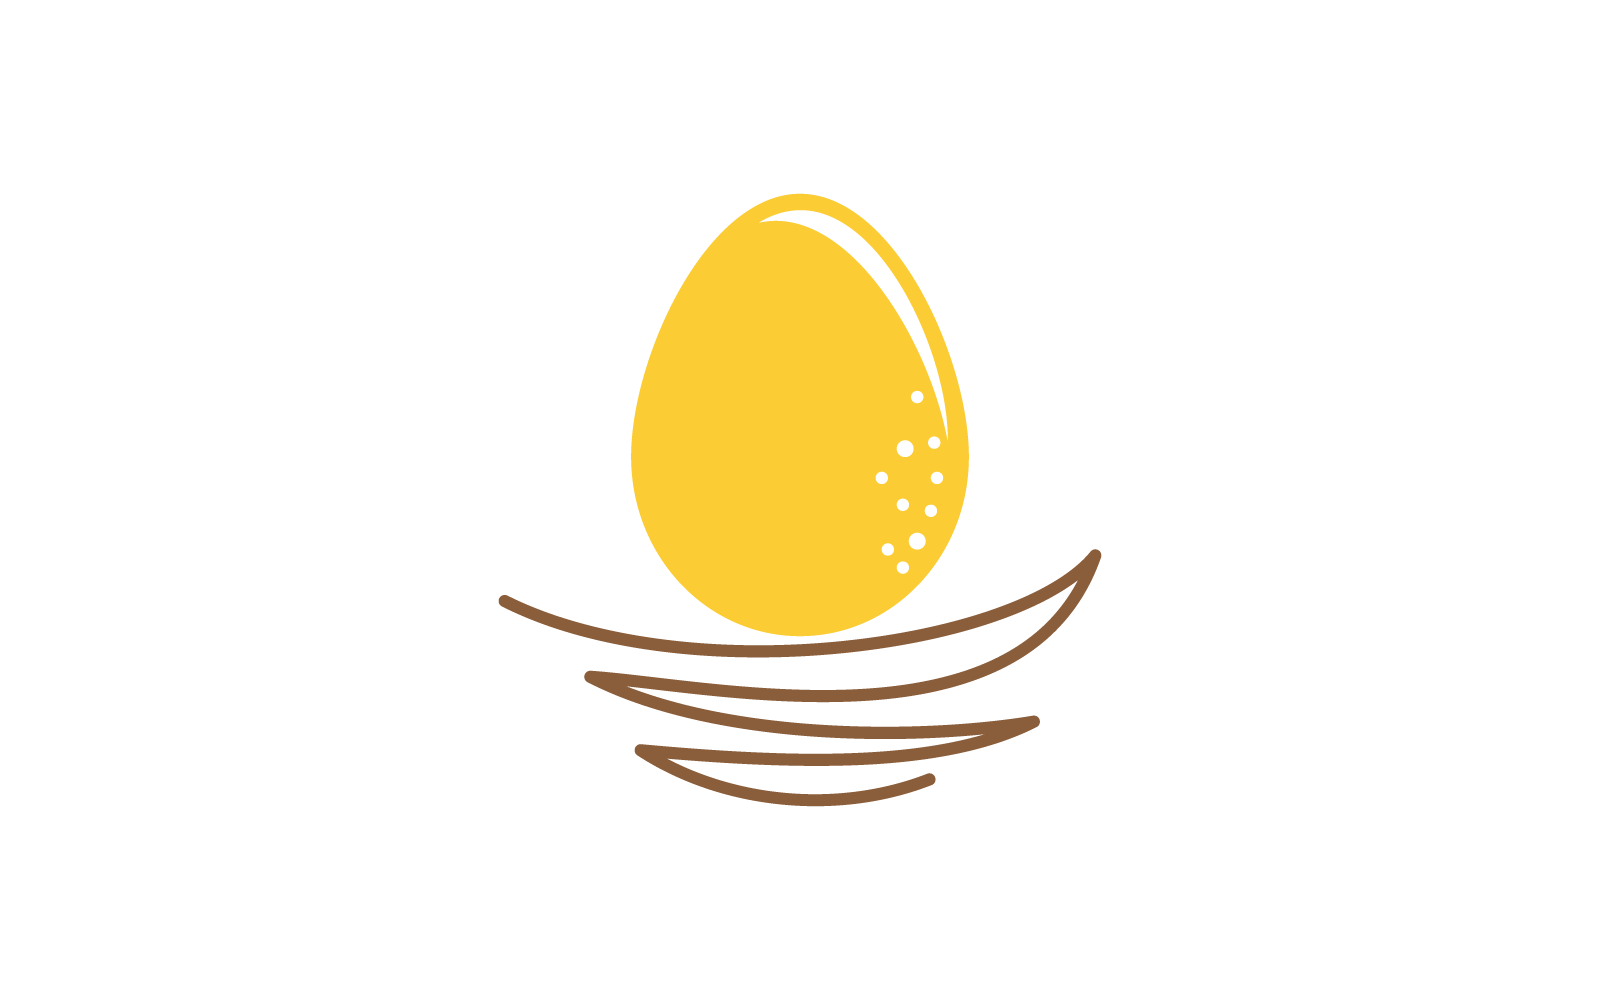 Diseño plano del vector del logotipo de la ilustración del huevo